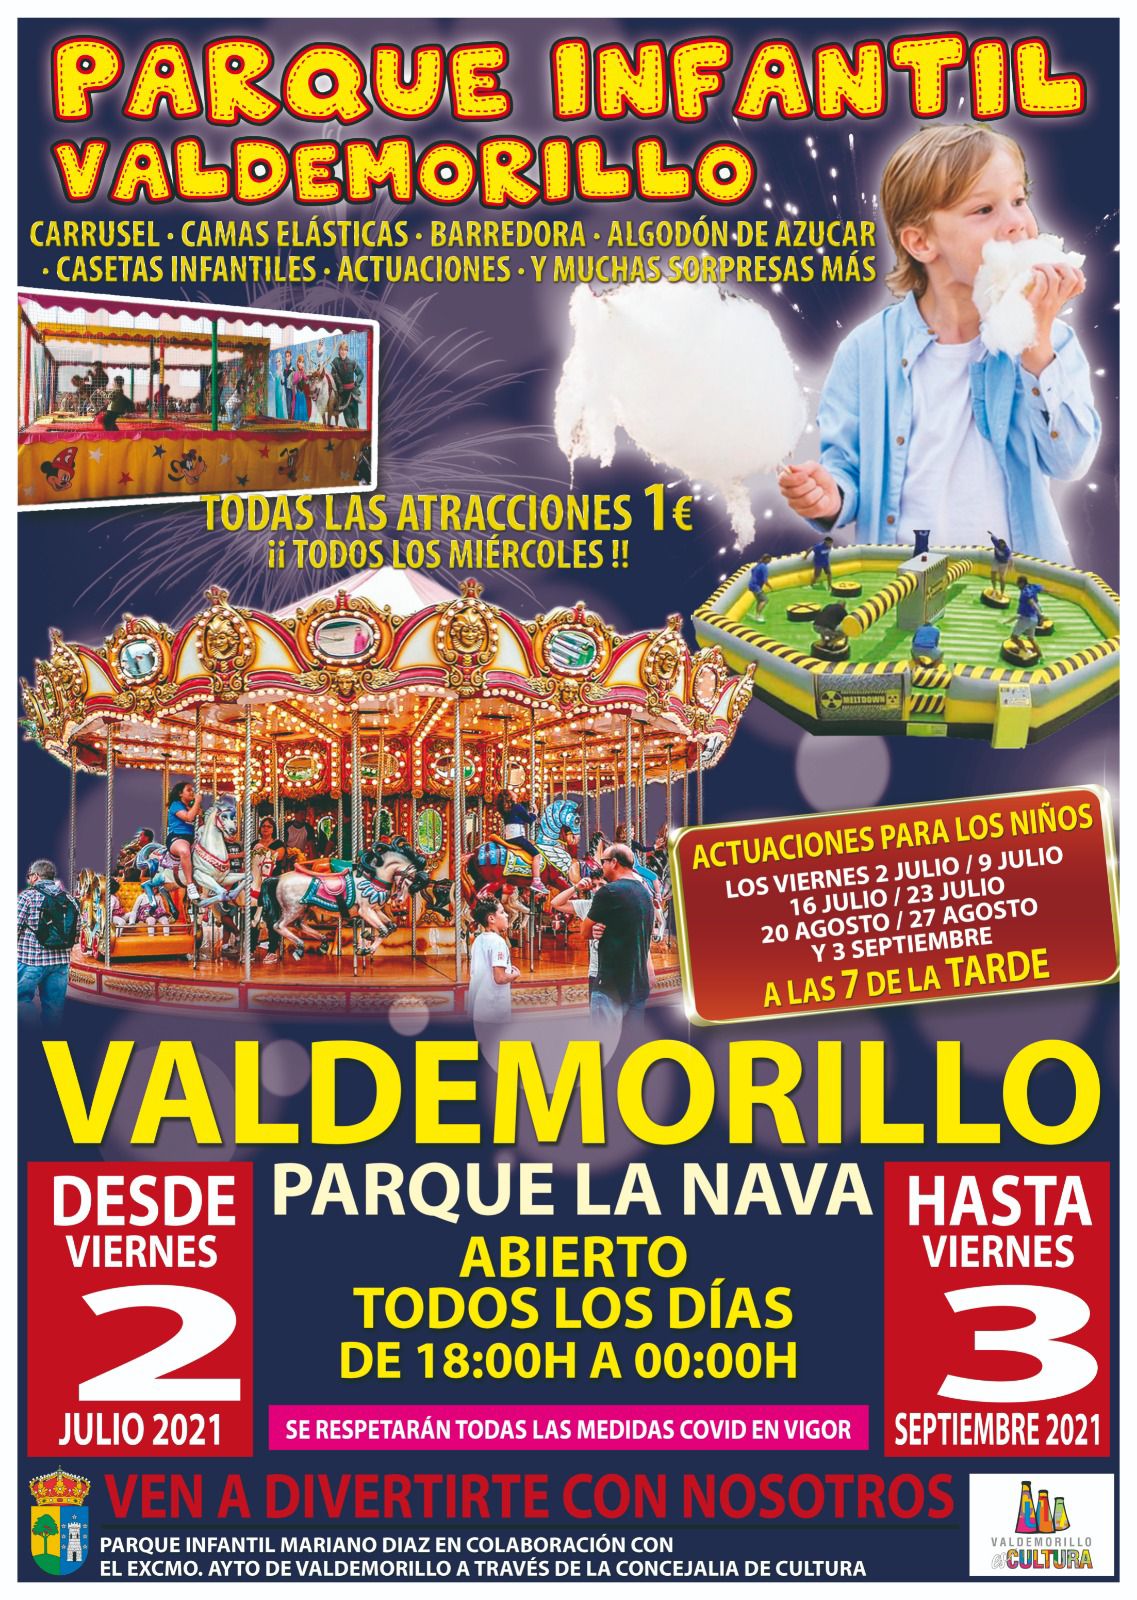 Desde este viernes, 2 de julio, y hasta el 3 de septiembre Valdemorillo abre las puertas de su gran Parque Infantil, lleno de atracciones y muchas más sorpresas